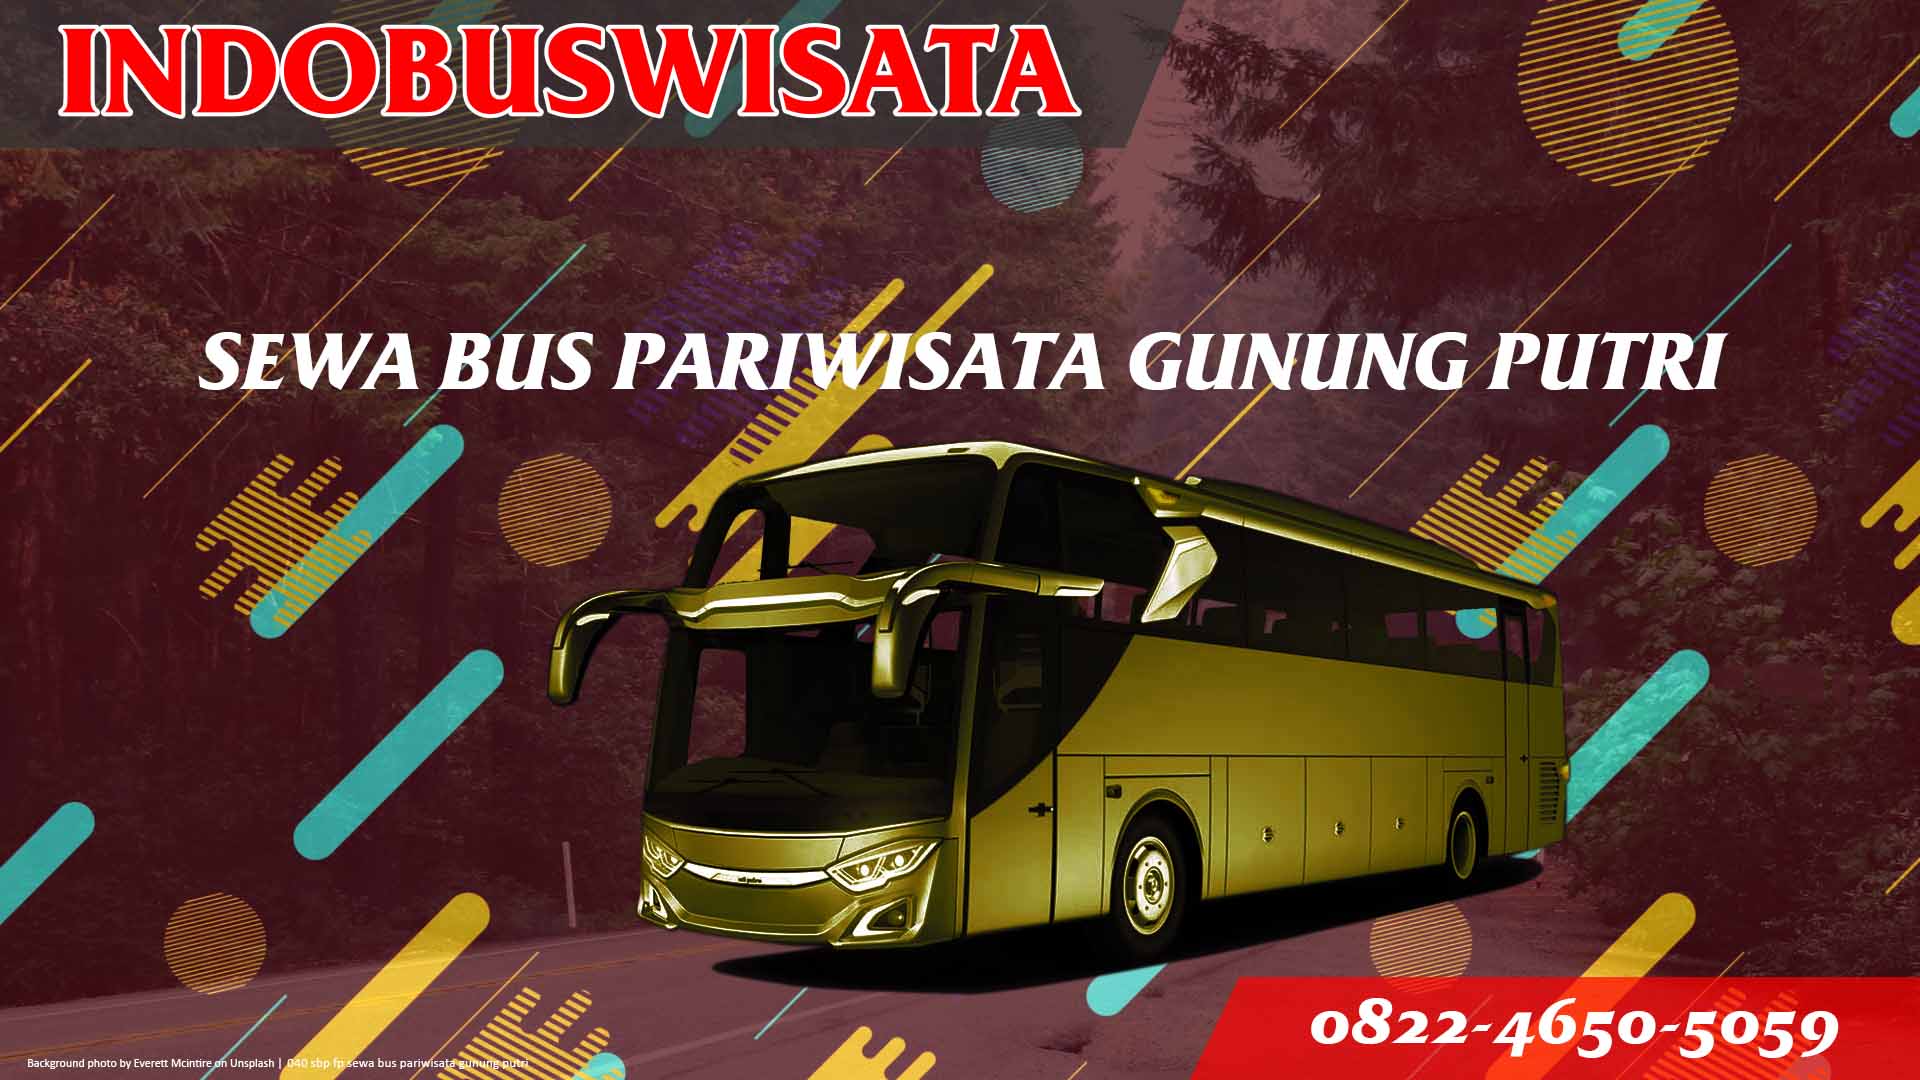 040 Sbp Fp Sewa Bus Pariwisata Gunung Putri Indobuswisata